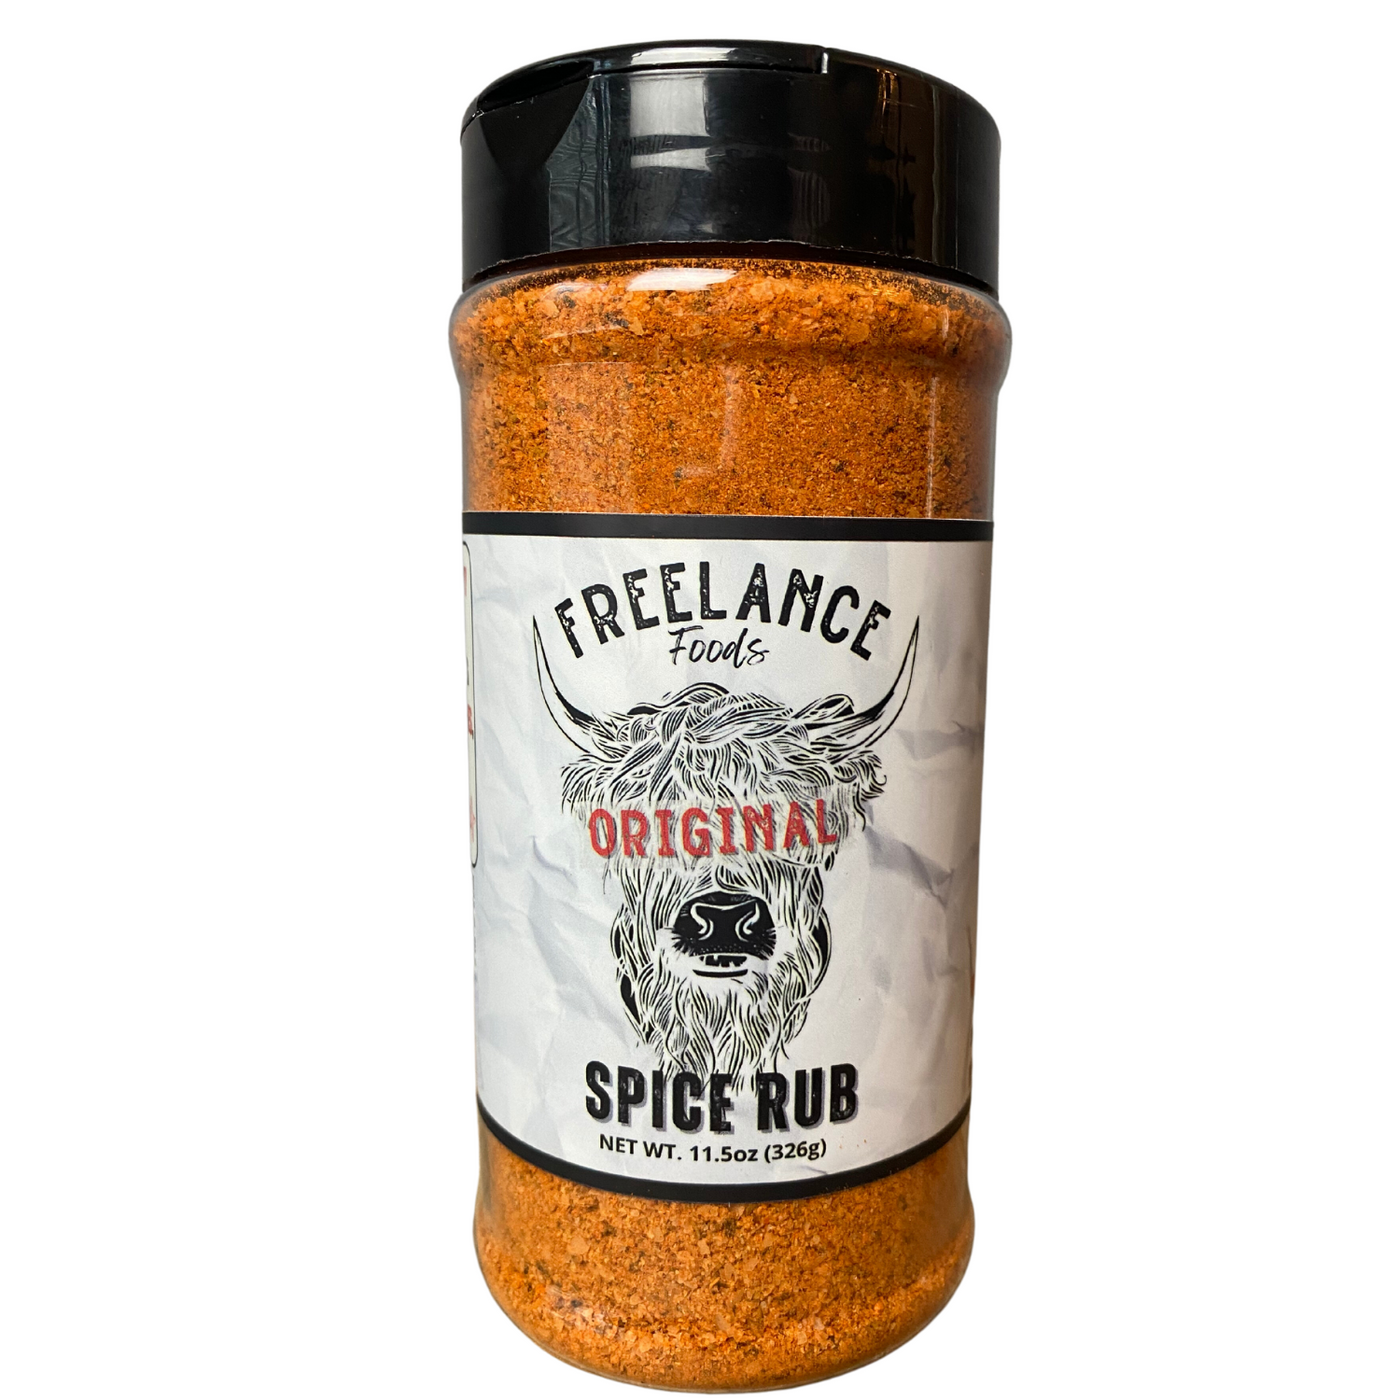 Original Spice Rub